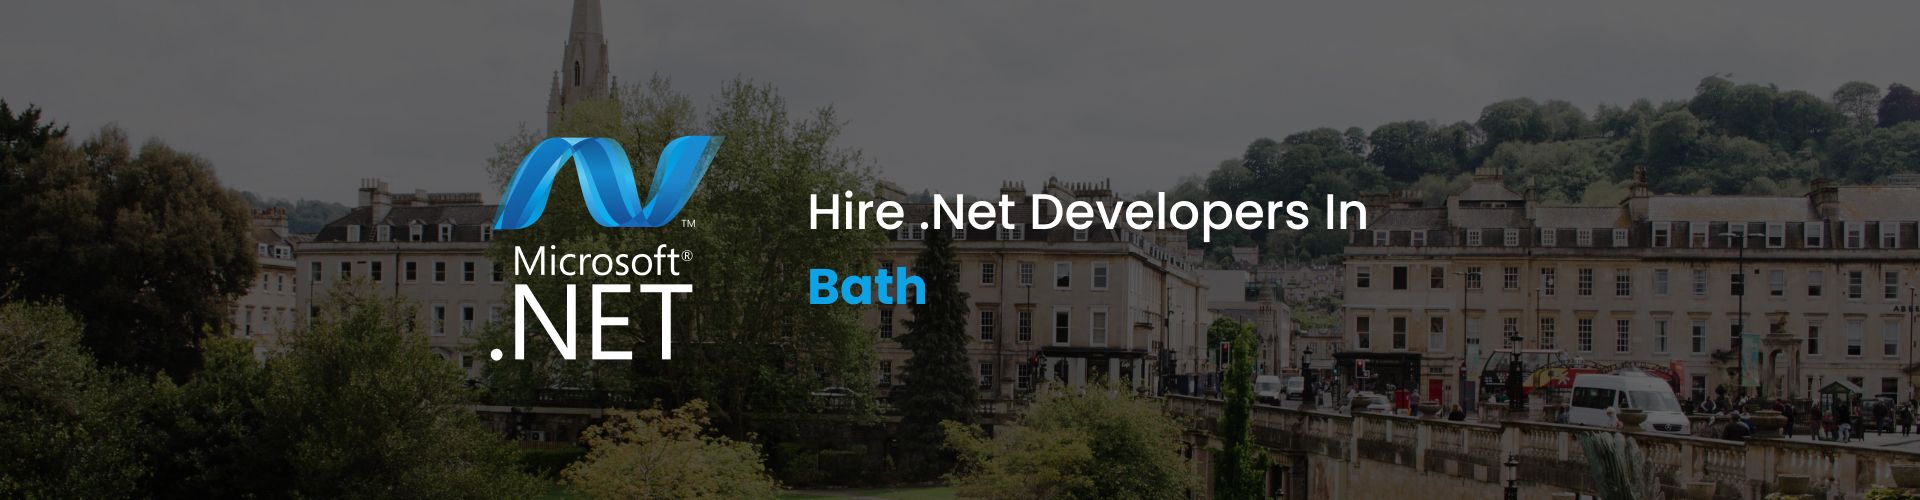 hire dot net developers in bath